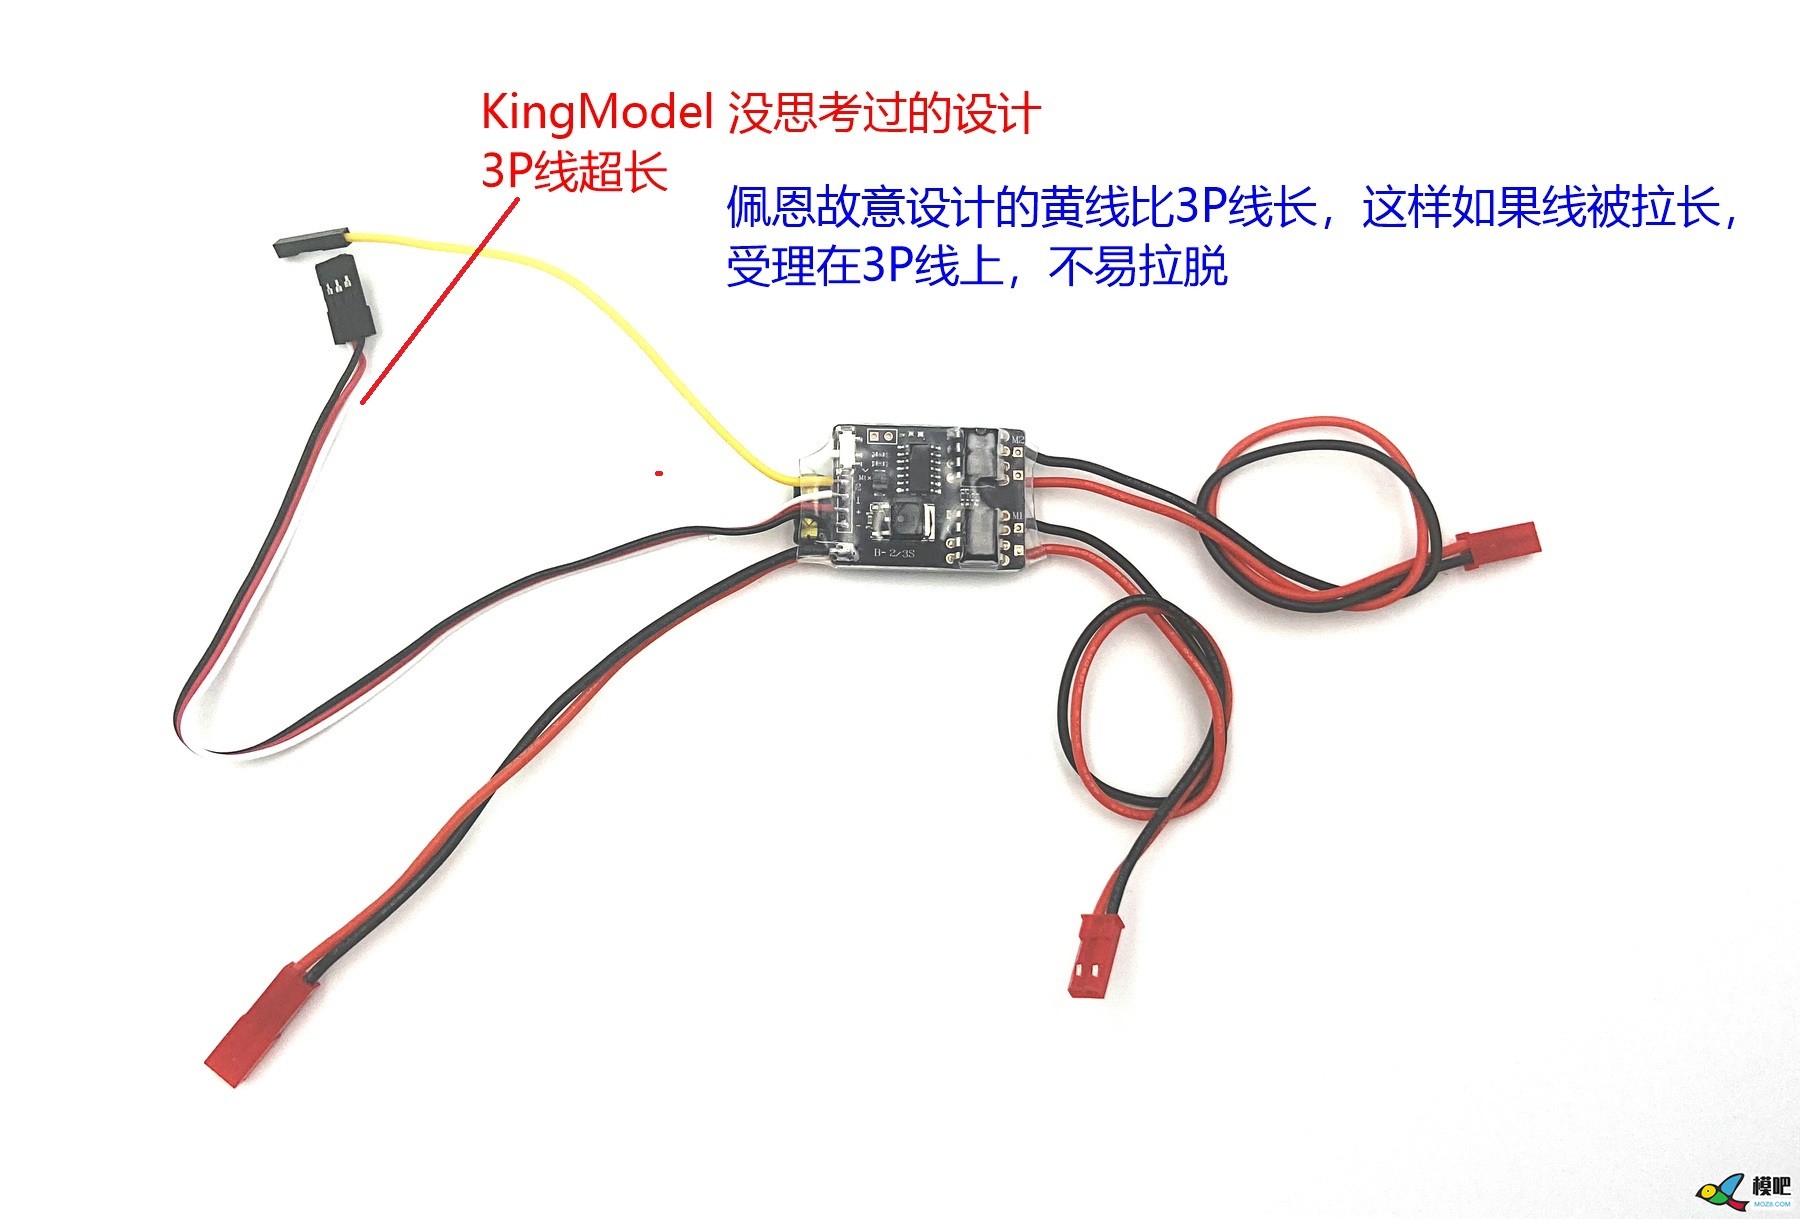 5Ax2 双路双向有刷混控电调，被 KingModel 无耻抄板 电调,有刷电调频率 作者:payne.pan 7054 